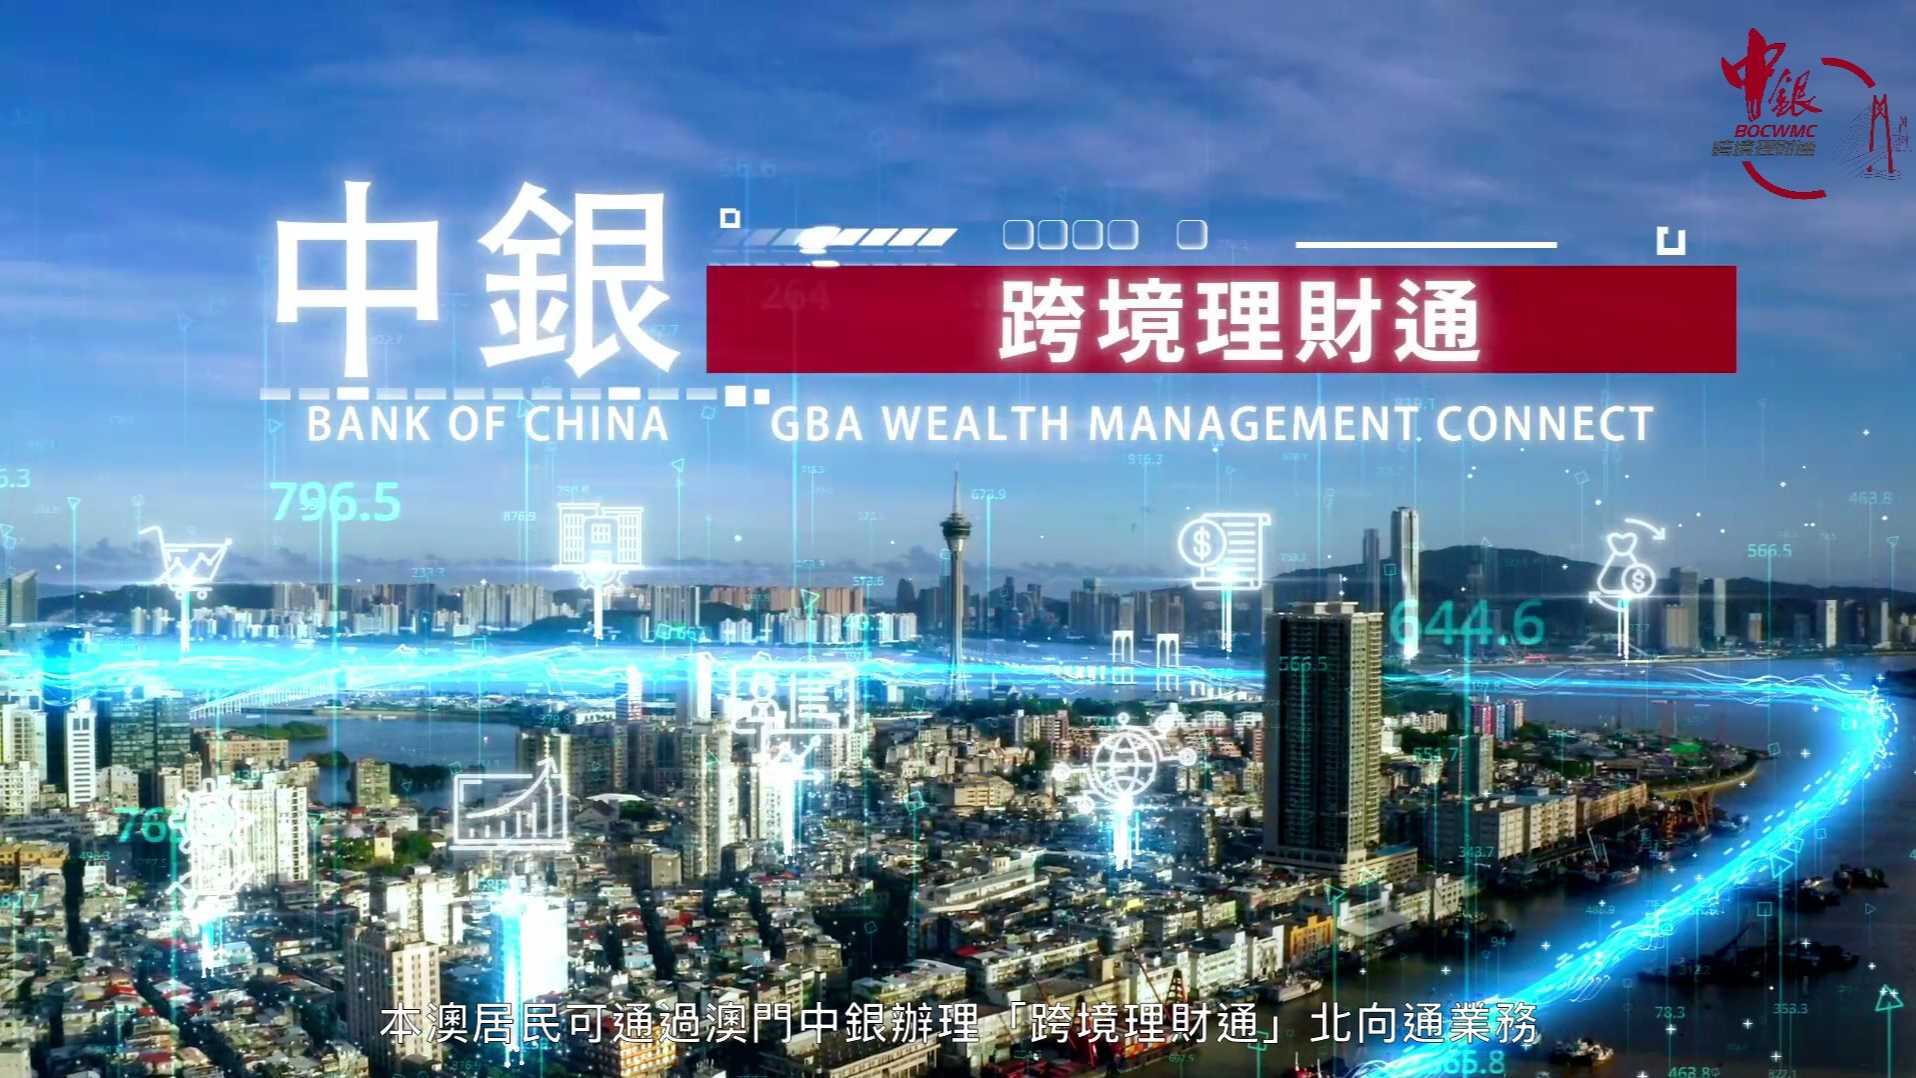 中国银行(澳门)宣传片 - 跨境理财通2021